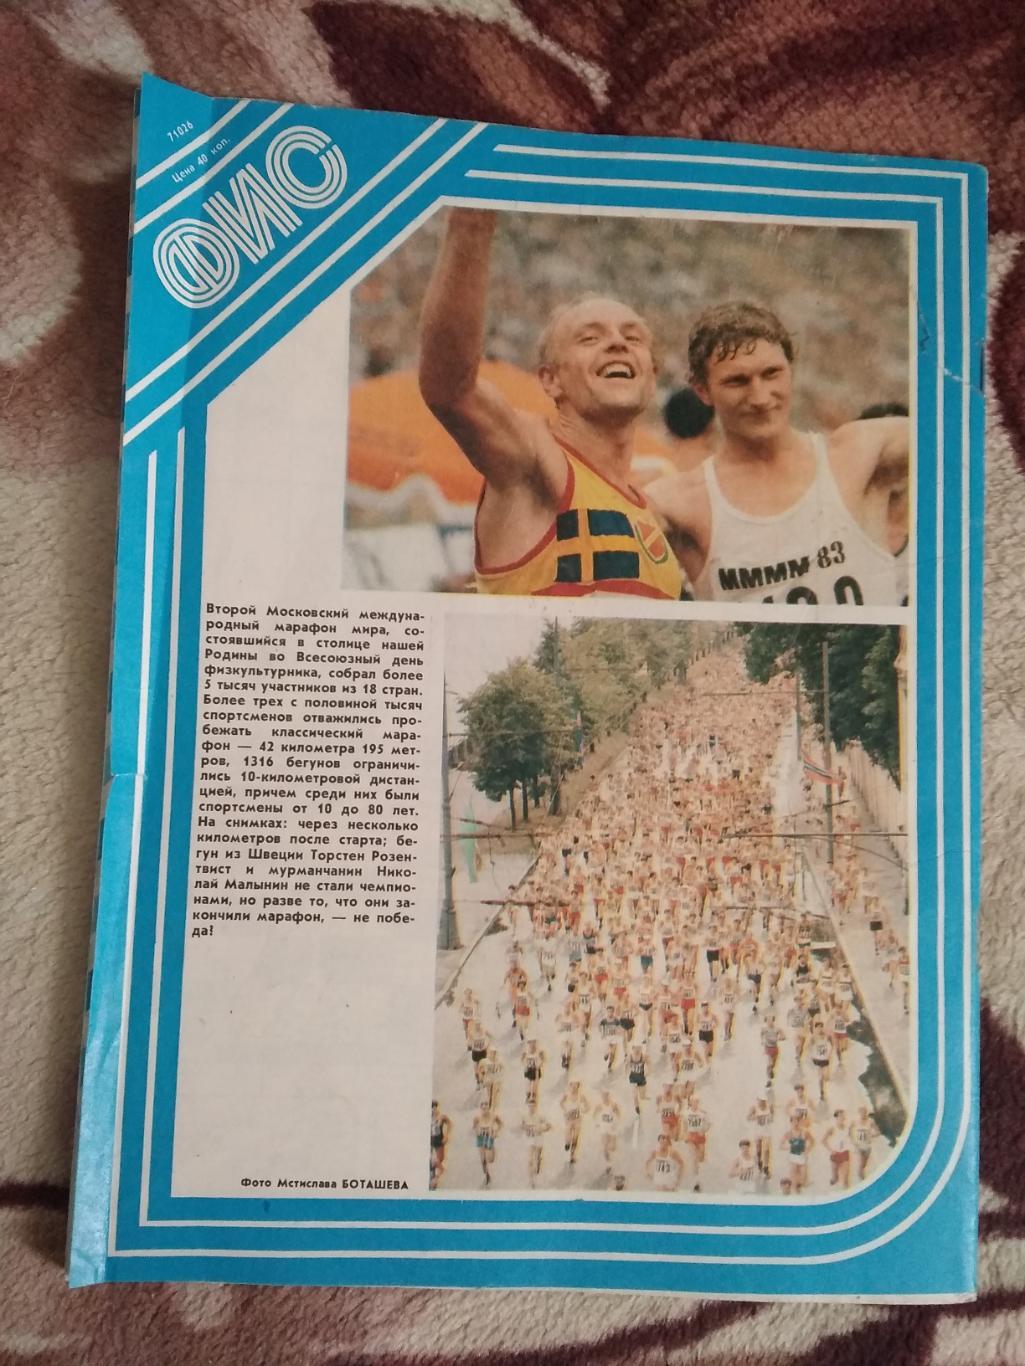 Журнал.Физкультура и спорт № 10 1983 г. (ФиС). 2